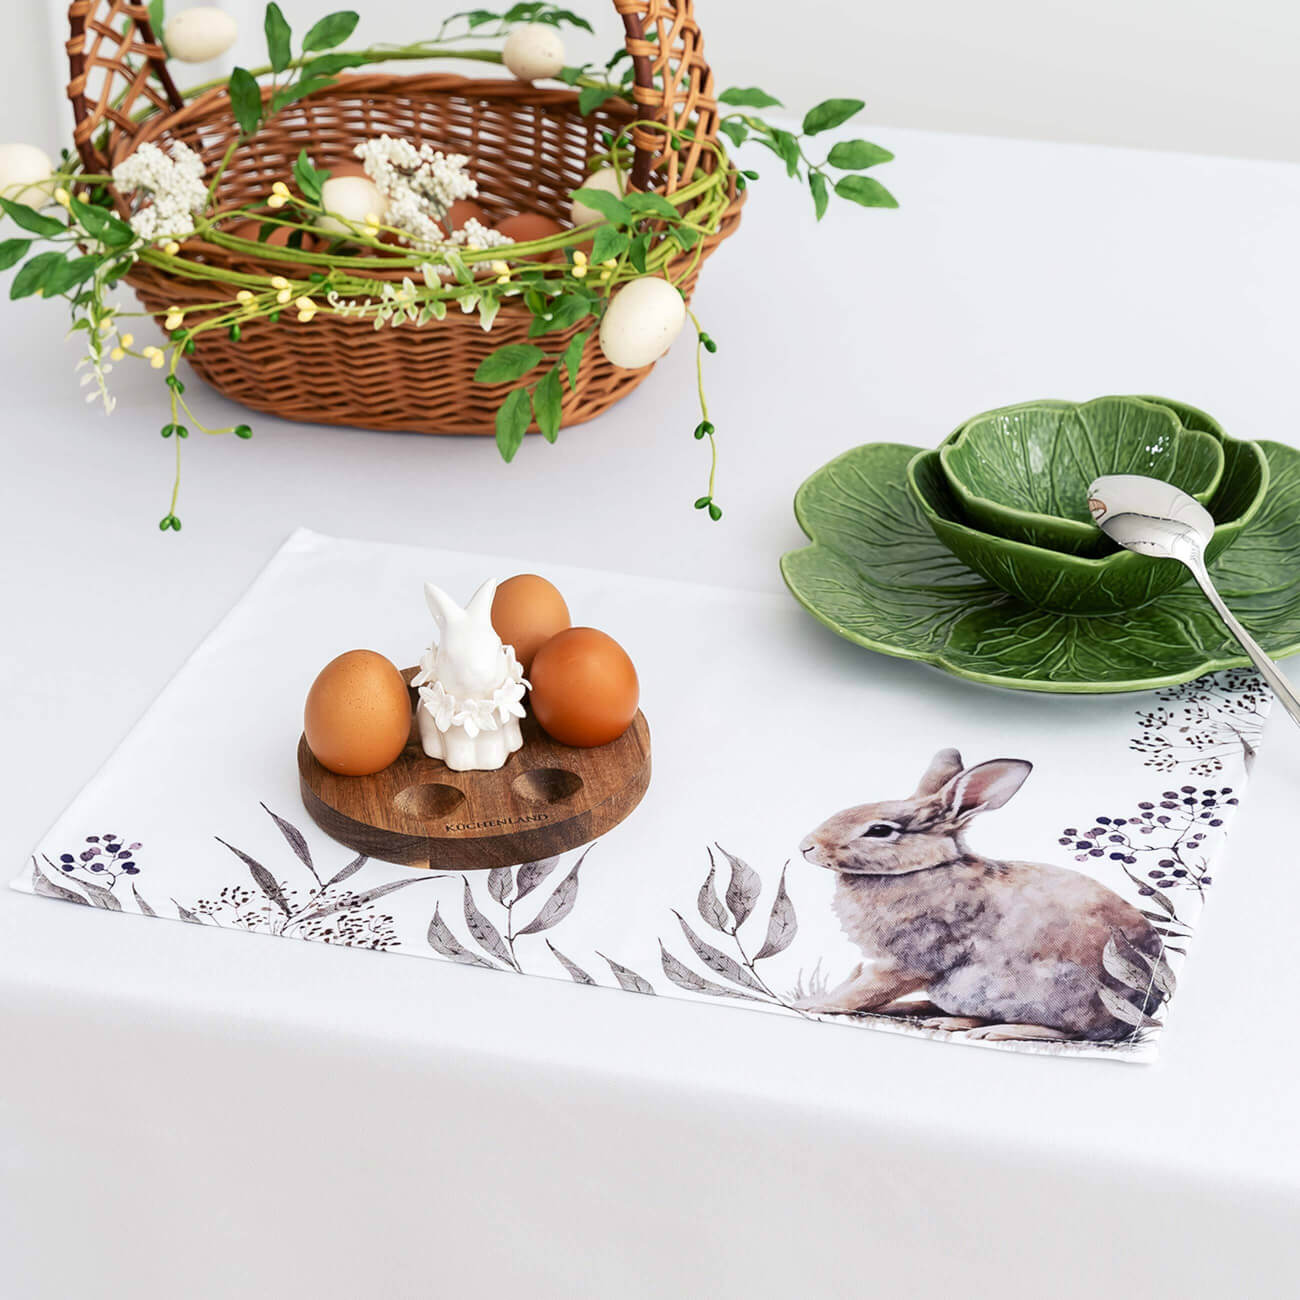 Салфетка под приборы, 30x45 см, полиэстер, белая, Кролик в листве, Natural Easter салфетка микрофибра raccoon